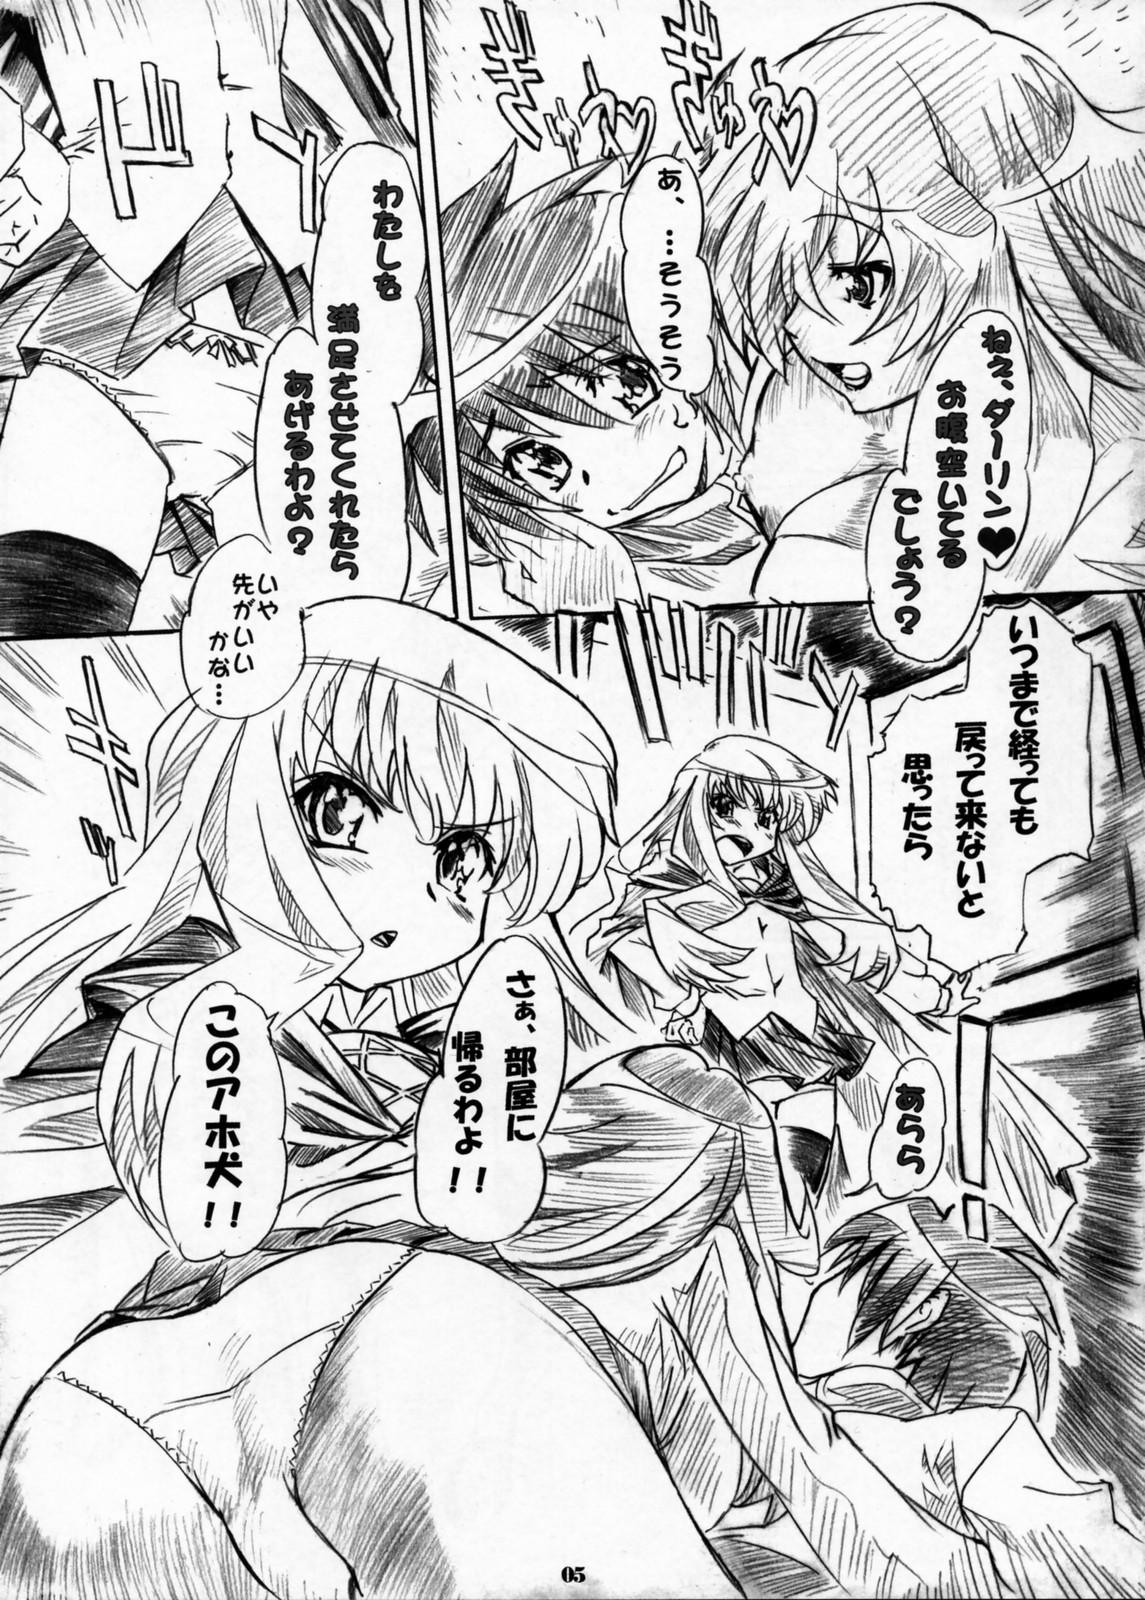 Peitos Kizoku Gokuraku - Zero no tsukaima Amateur - Page 4